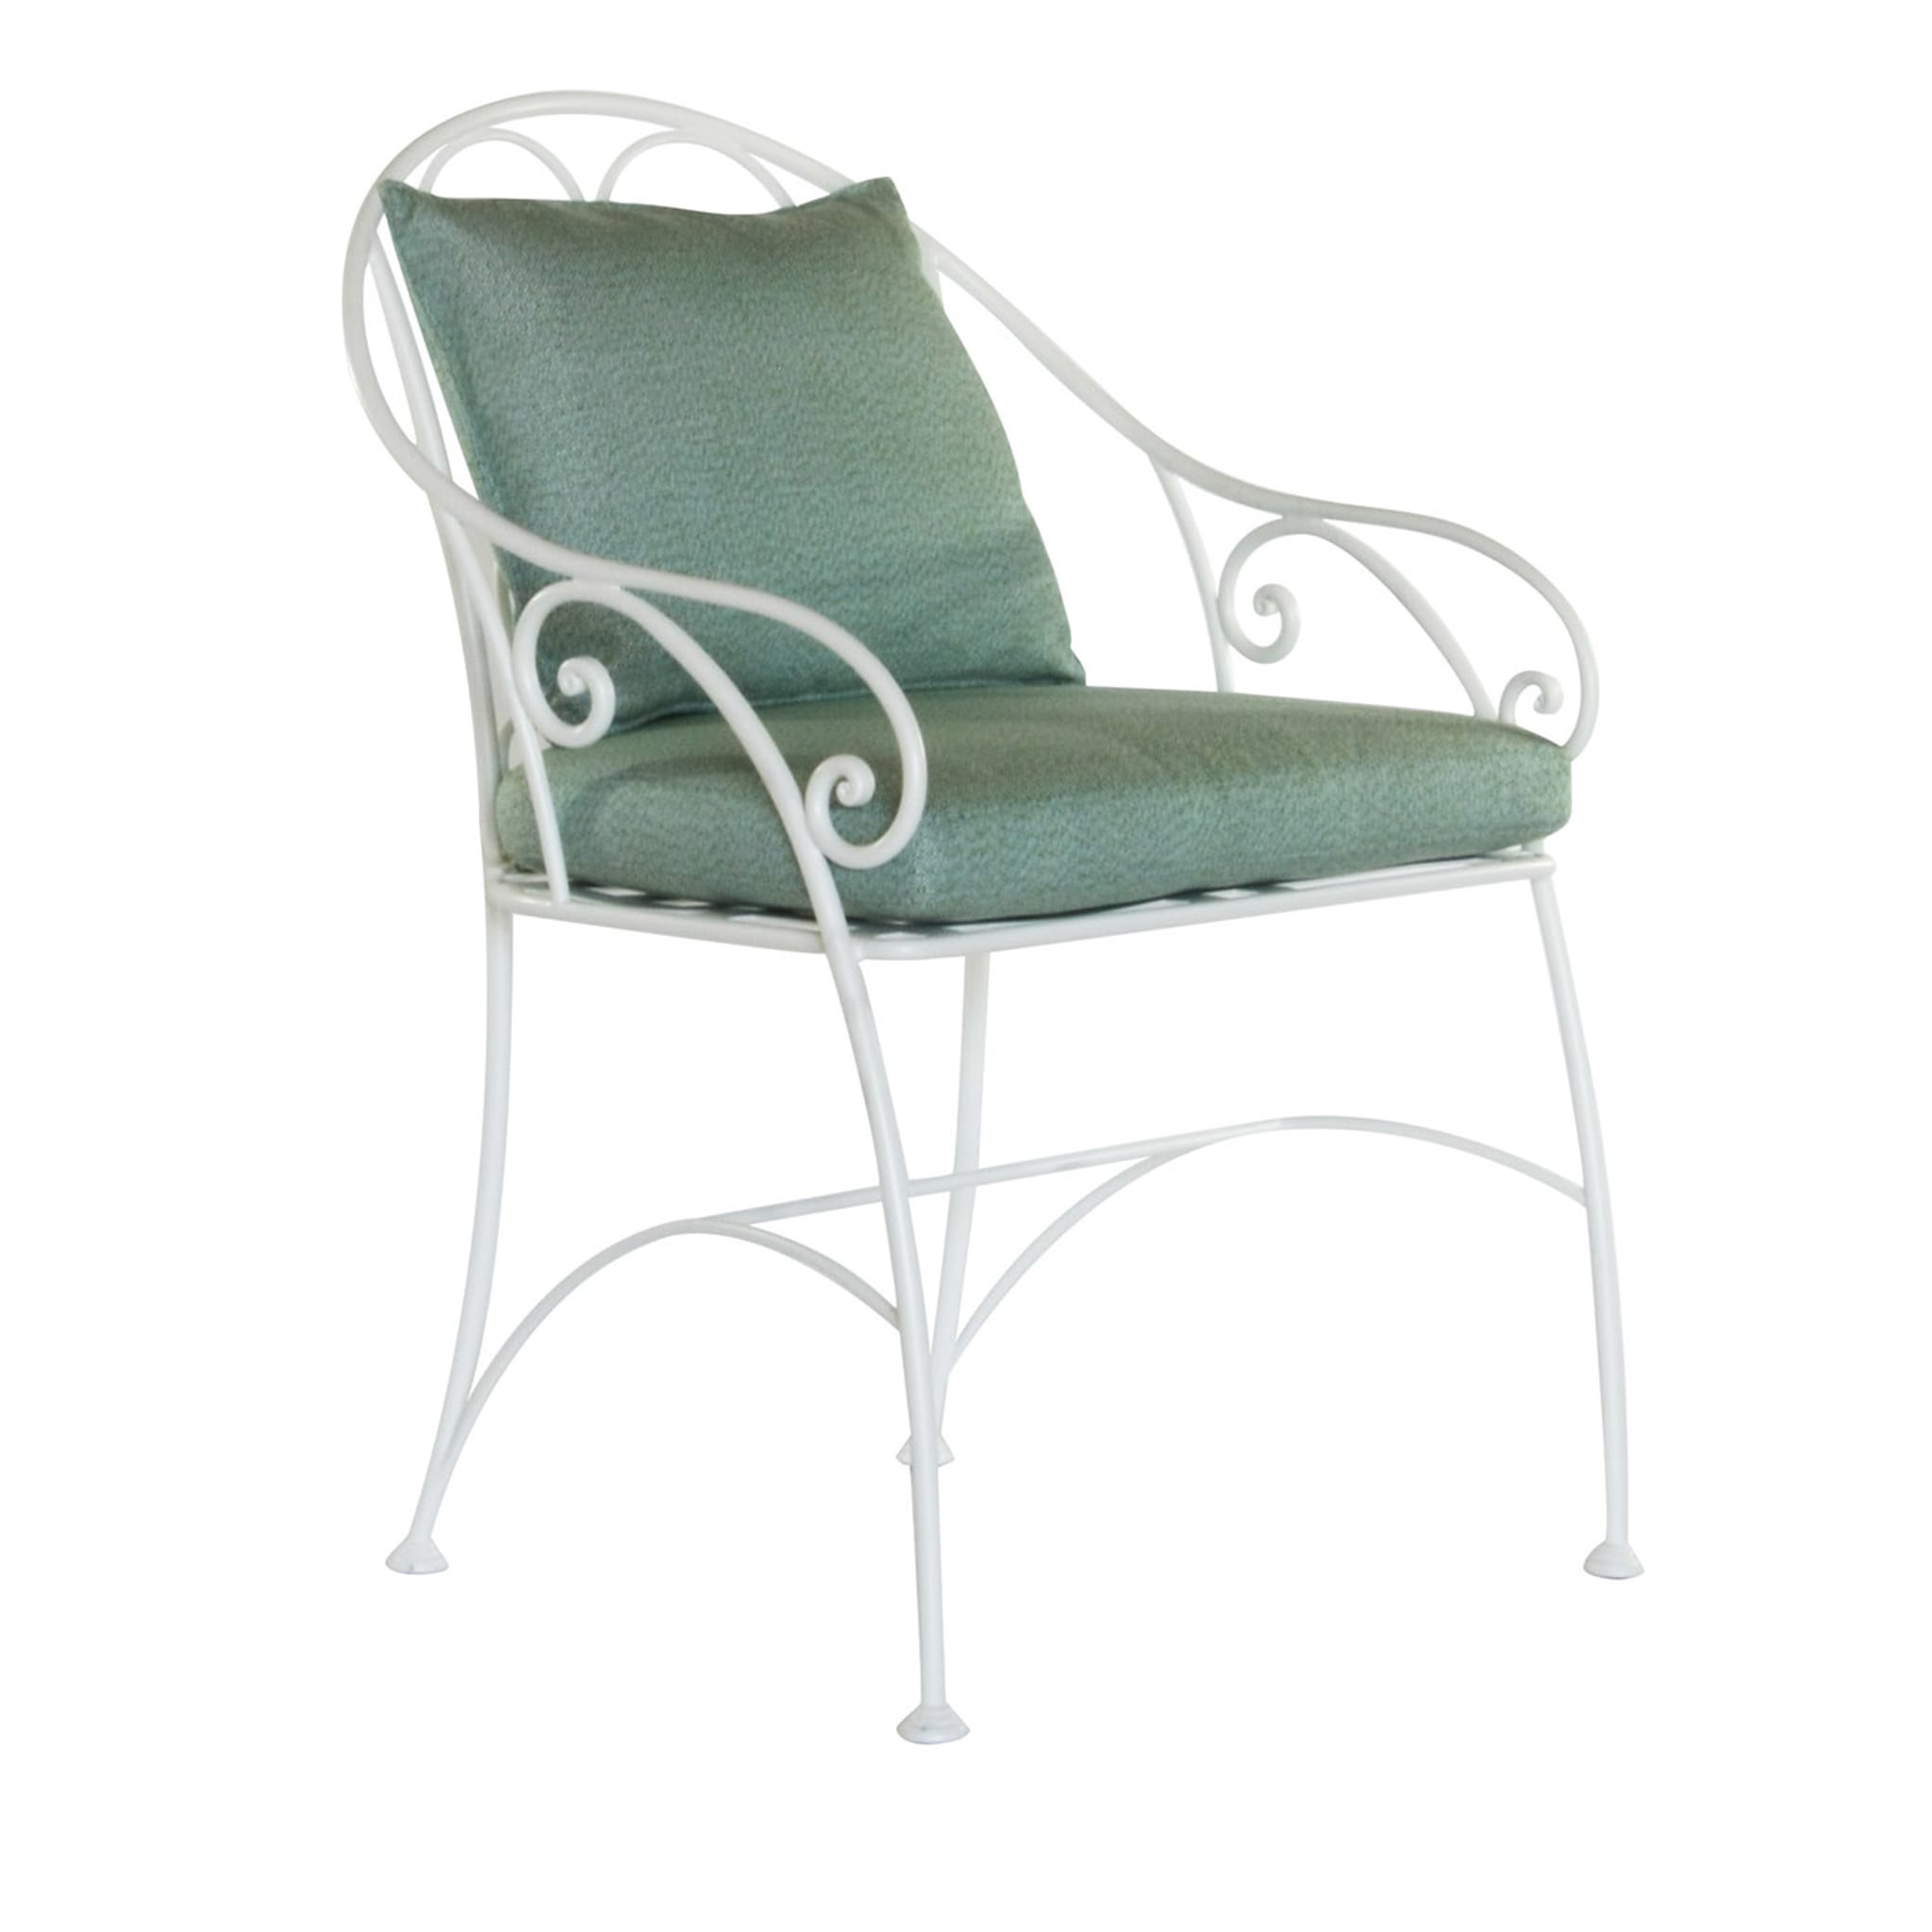 Armonia White Chair - Main view